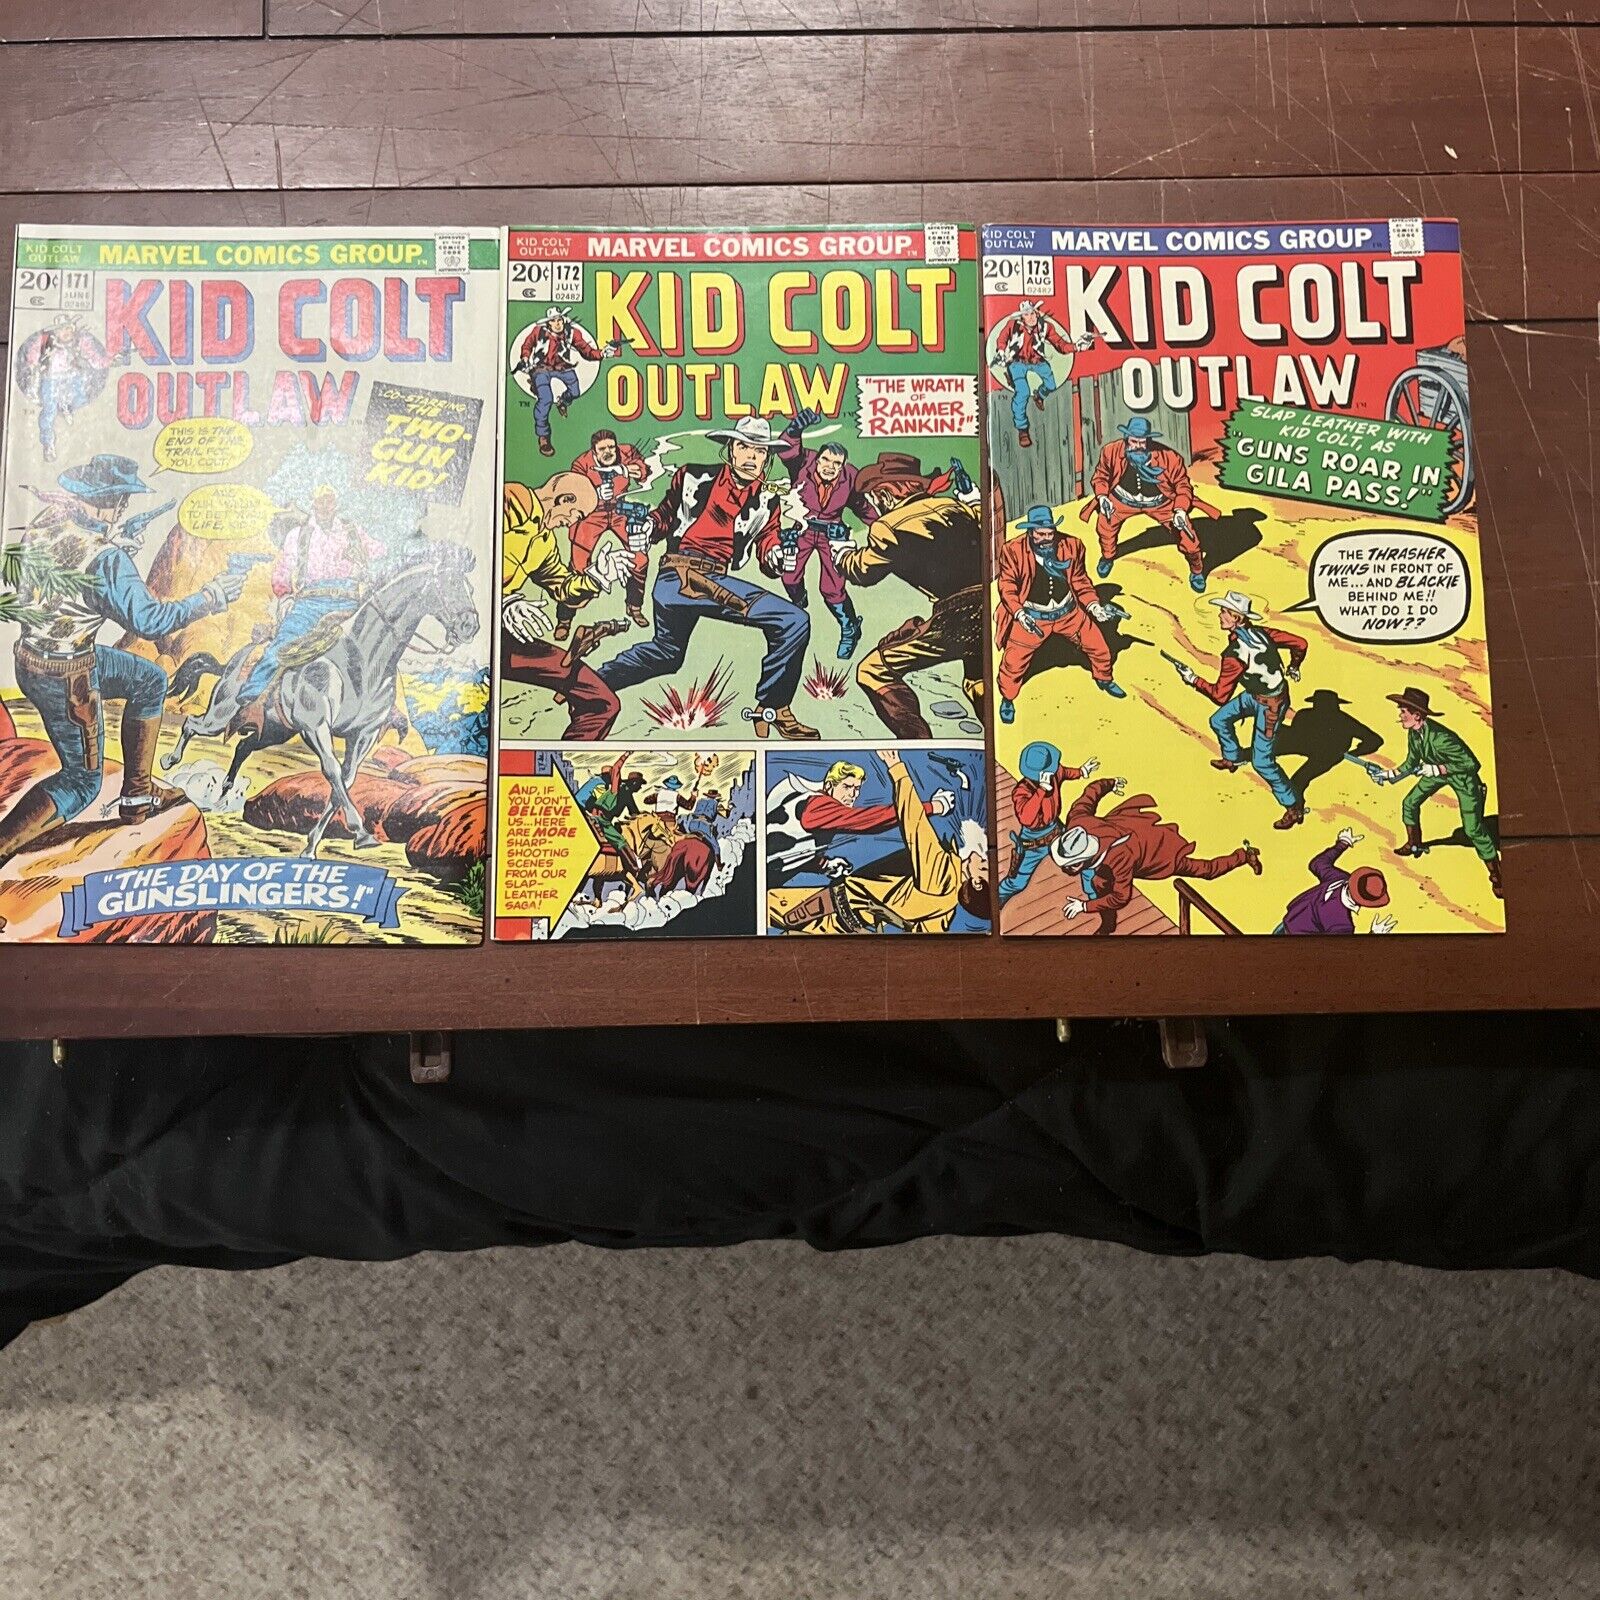 (3) Lot Of KID COLT OUTLAW #171 #172 #173 1973 Vintage Western Marvel Comics NM